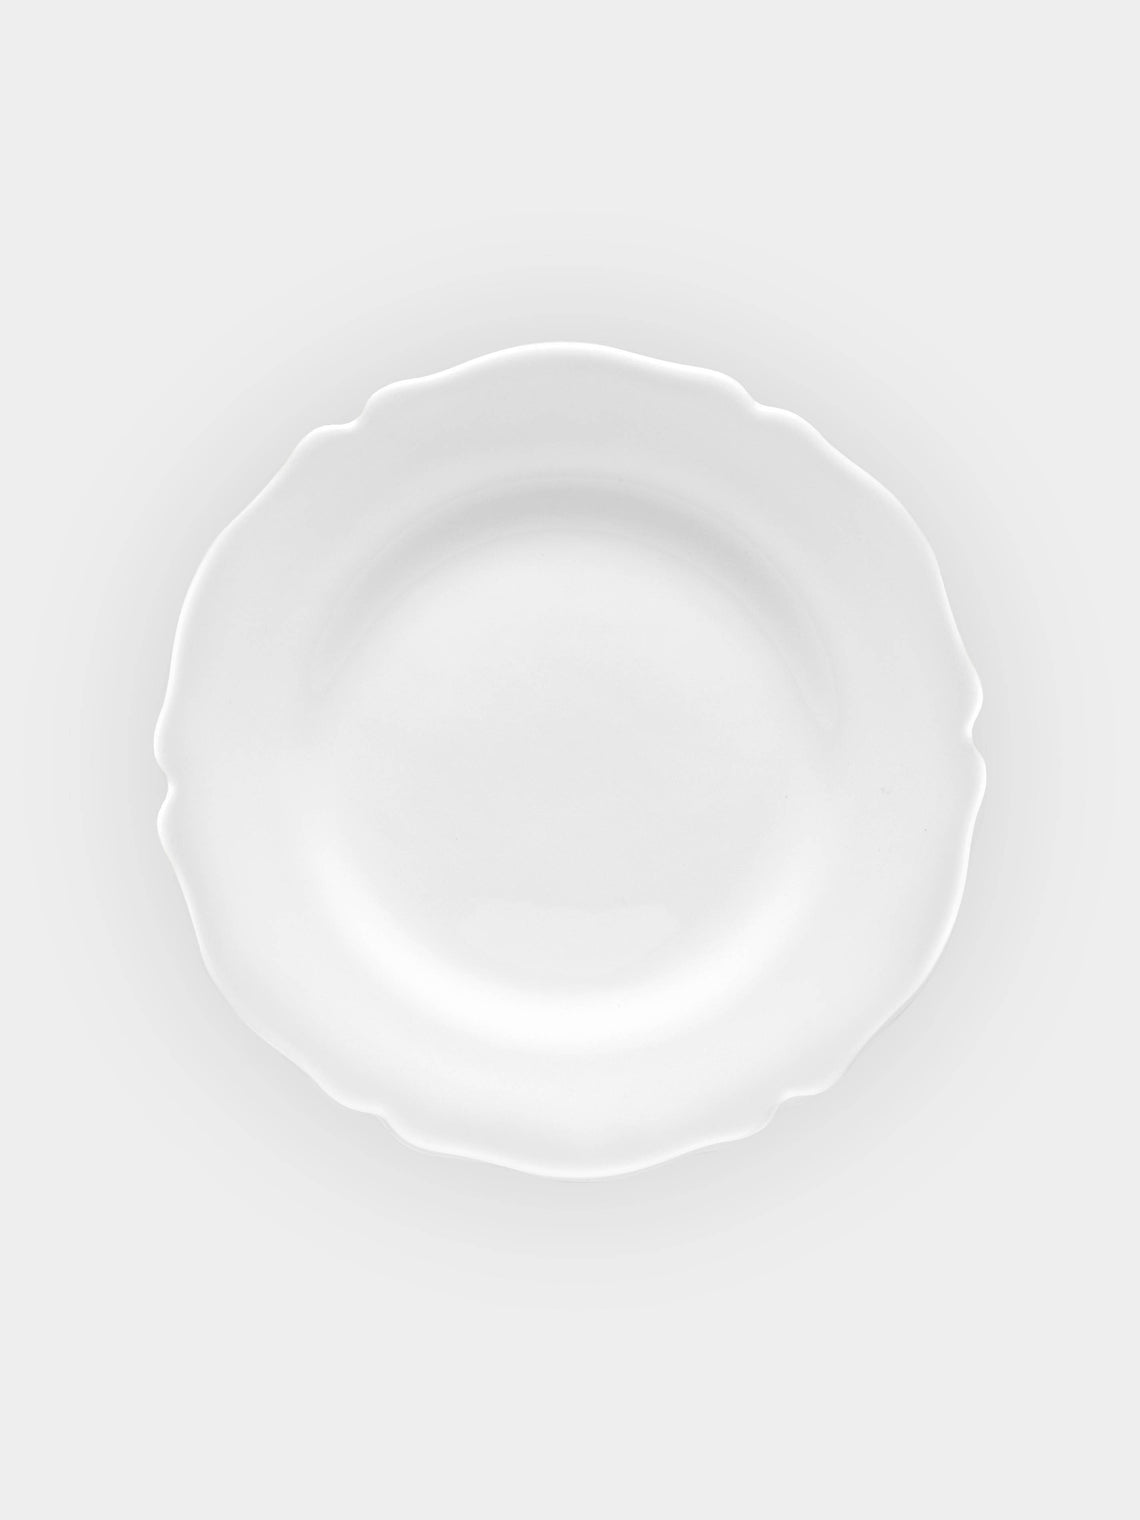 Bourg Joly Malicorne - Festons Ceramic Dinner Plate -  - ABASK - 